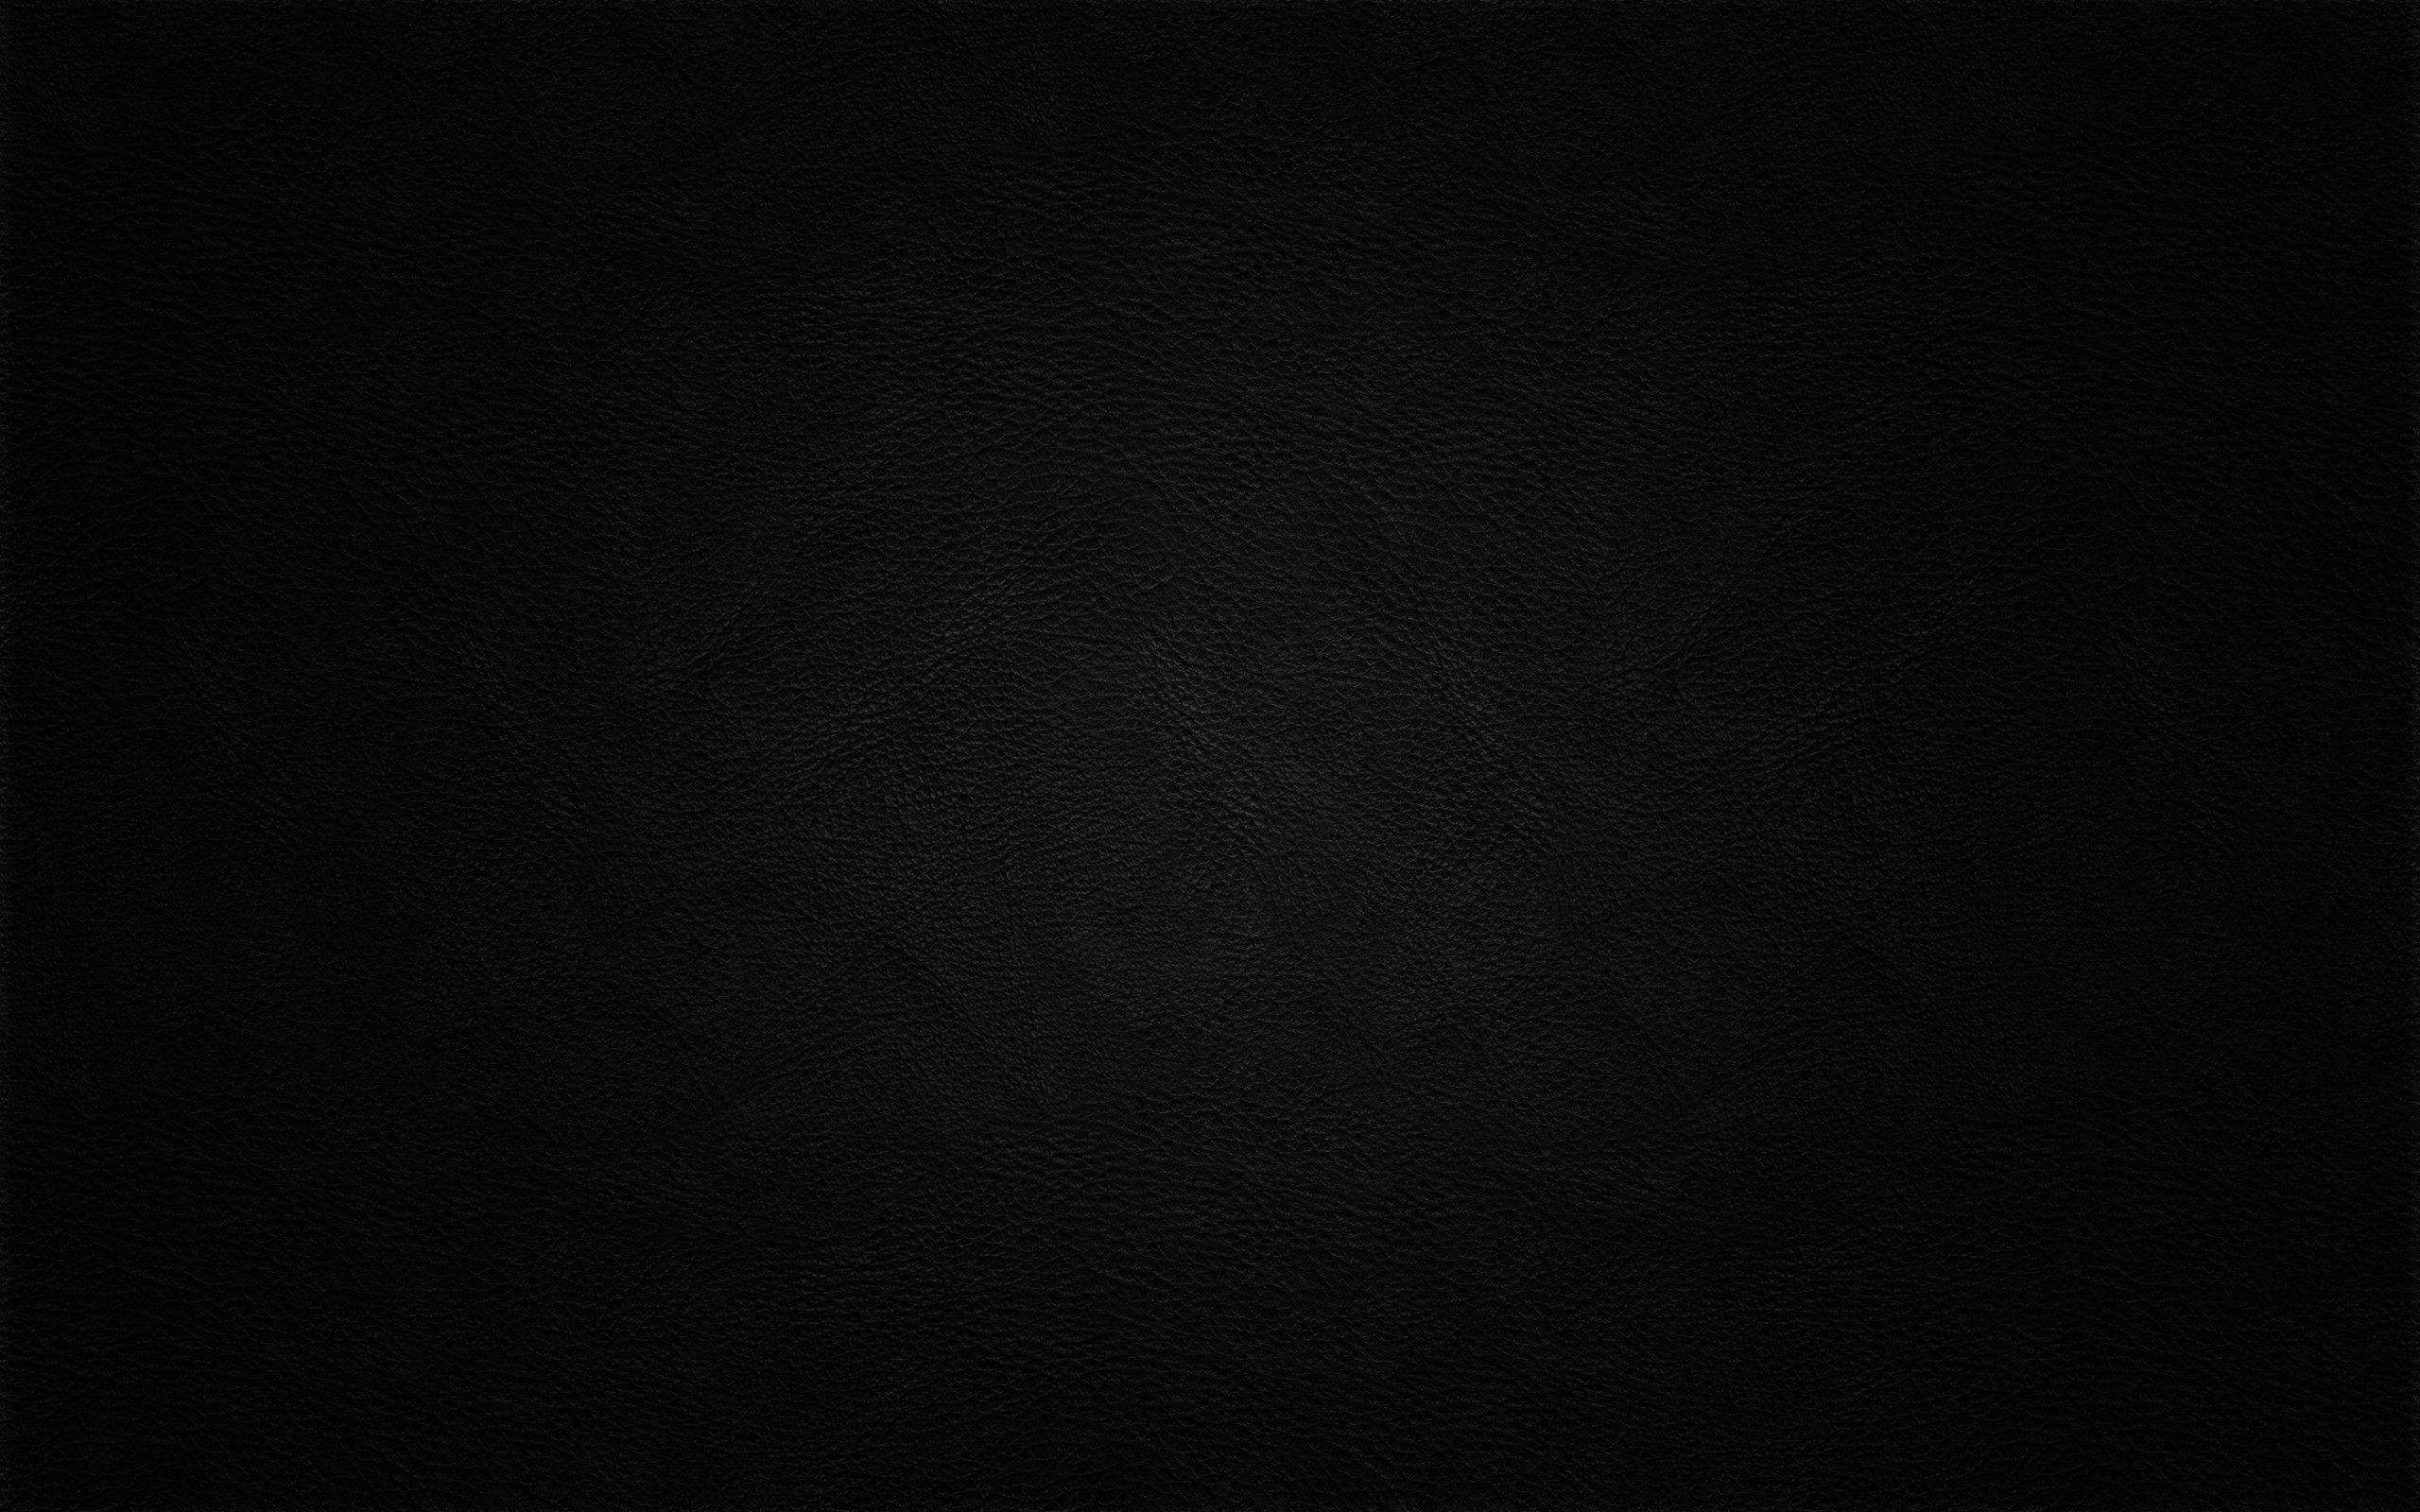 Black Screen Wallpapers - Top Hình Ảnh Đẹp